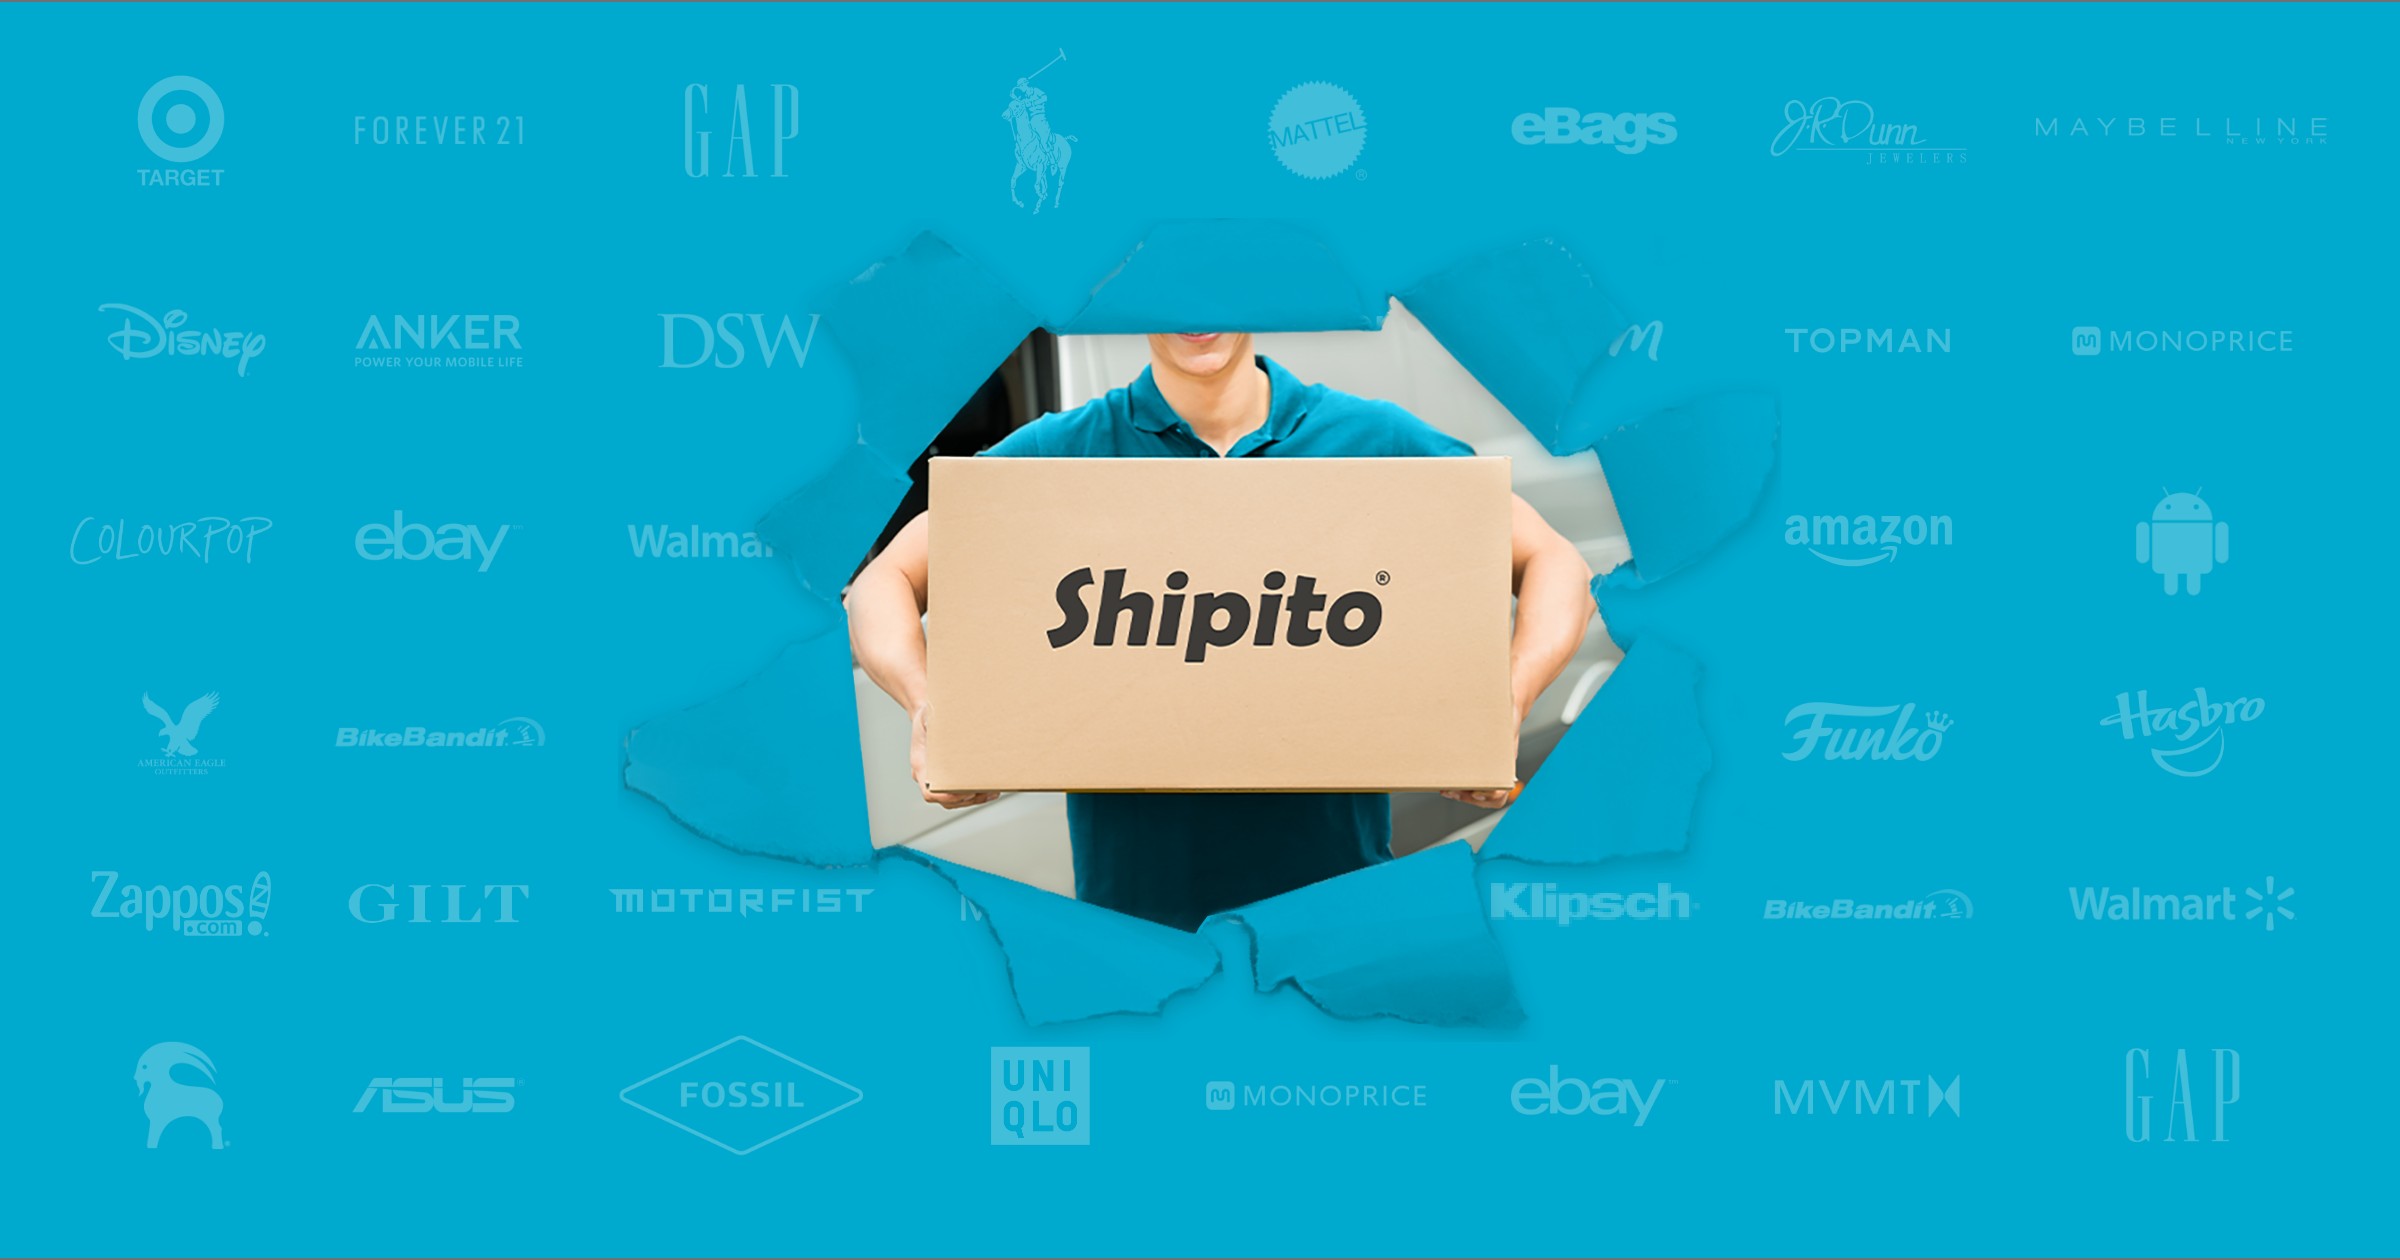 การขนส่งสินค้า Shipito,รับฝากซื้อของ,ซื้อของออนไลน์